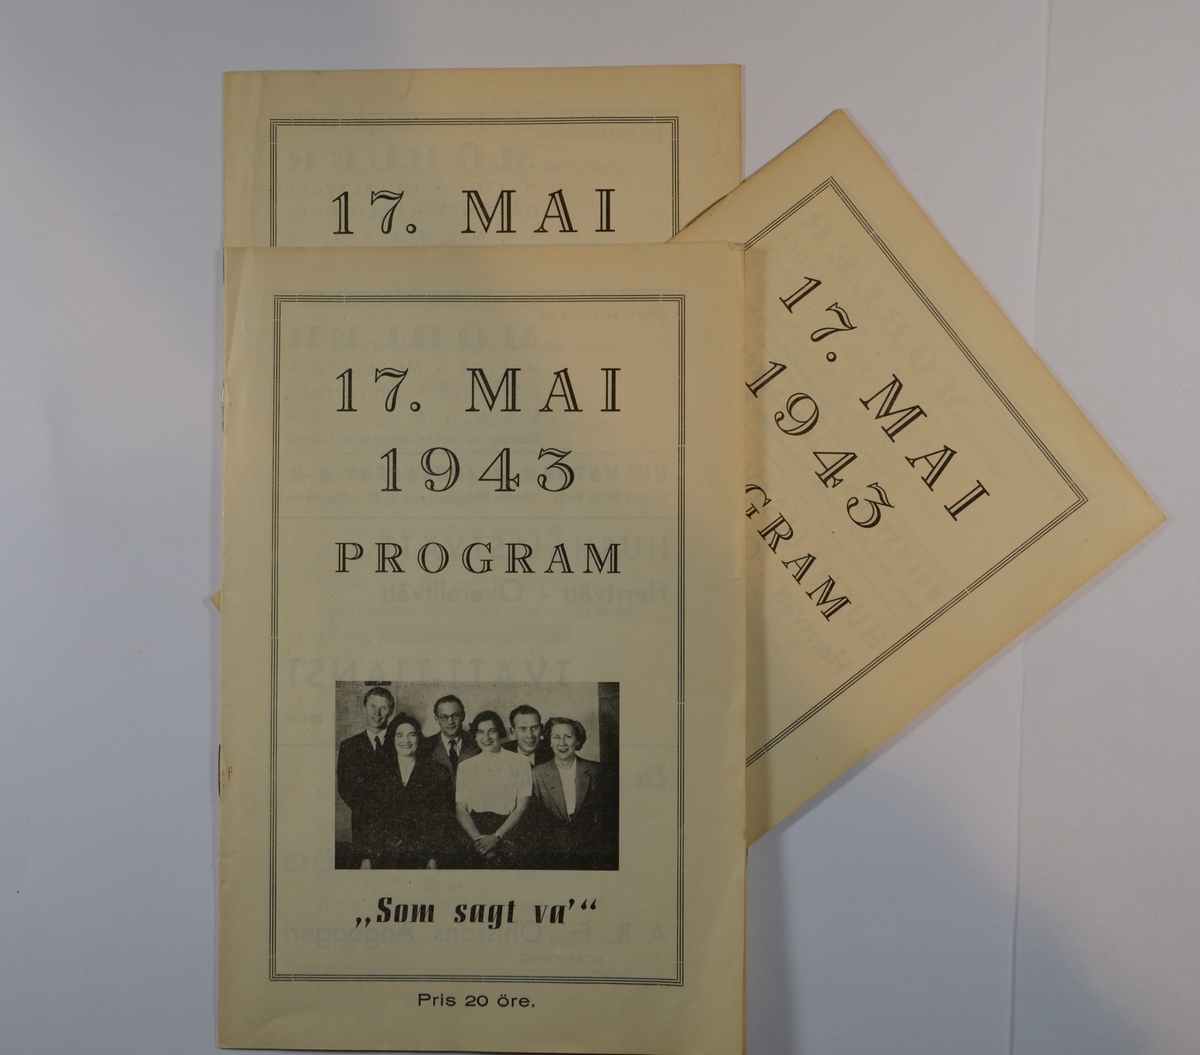 17. mai 1943 program til revyen: "Som sagt va", skrevet av Eva Scheer og Ben London.
Trykket av Kjellman & Bothvidson Tryckeri, Norrköping 1943.